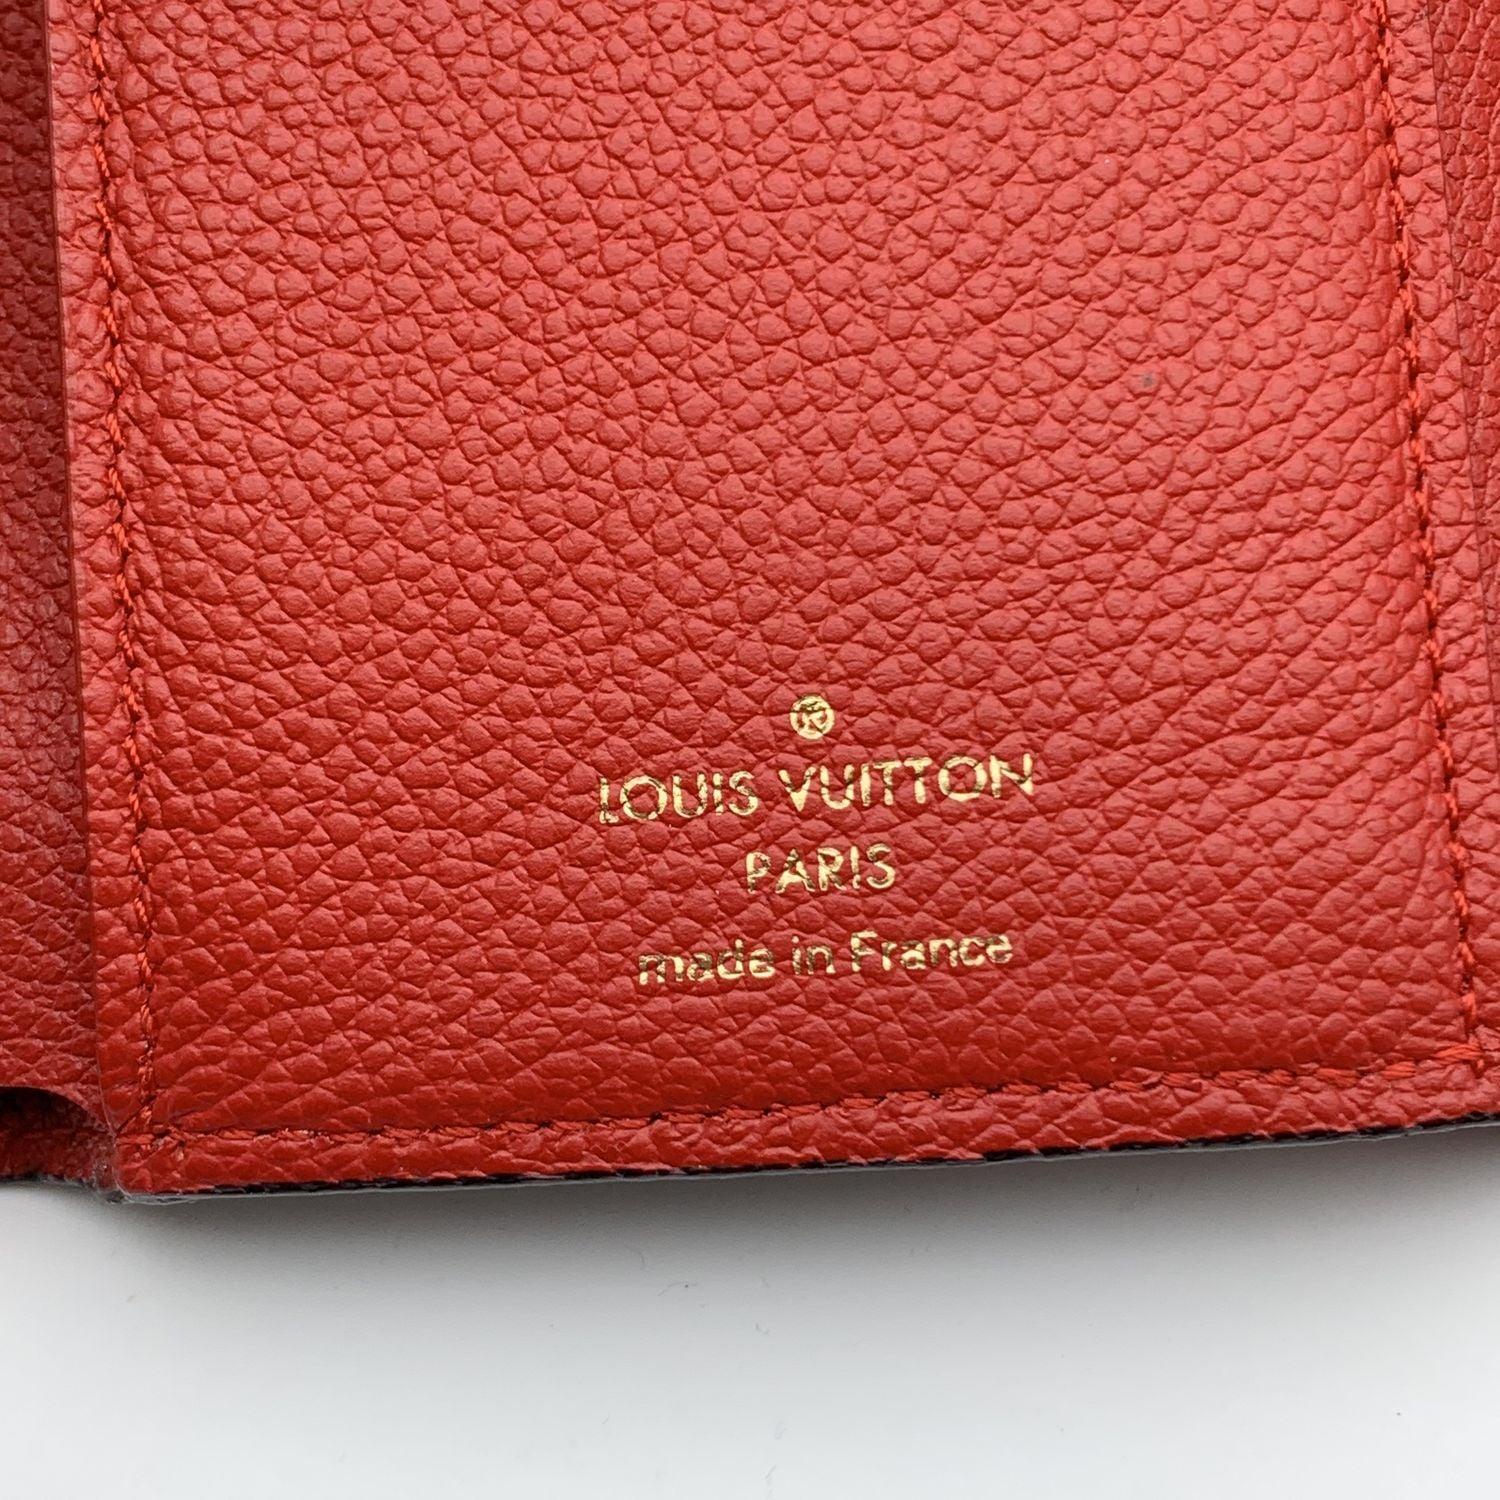 Louis Vuitton Monogram Canvas Pallas NM CompactWallet Red Flap 2